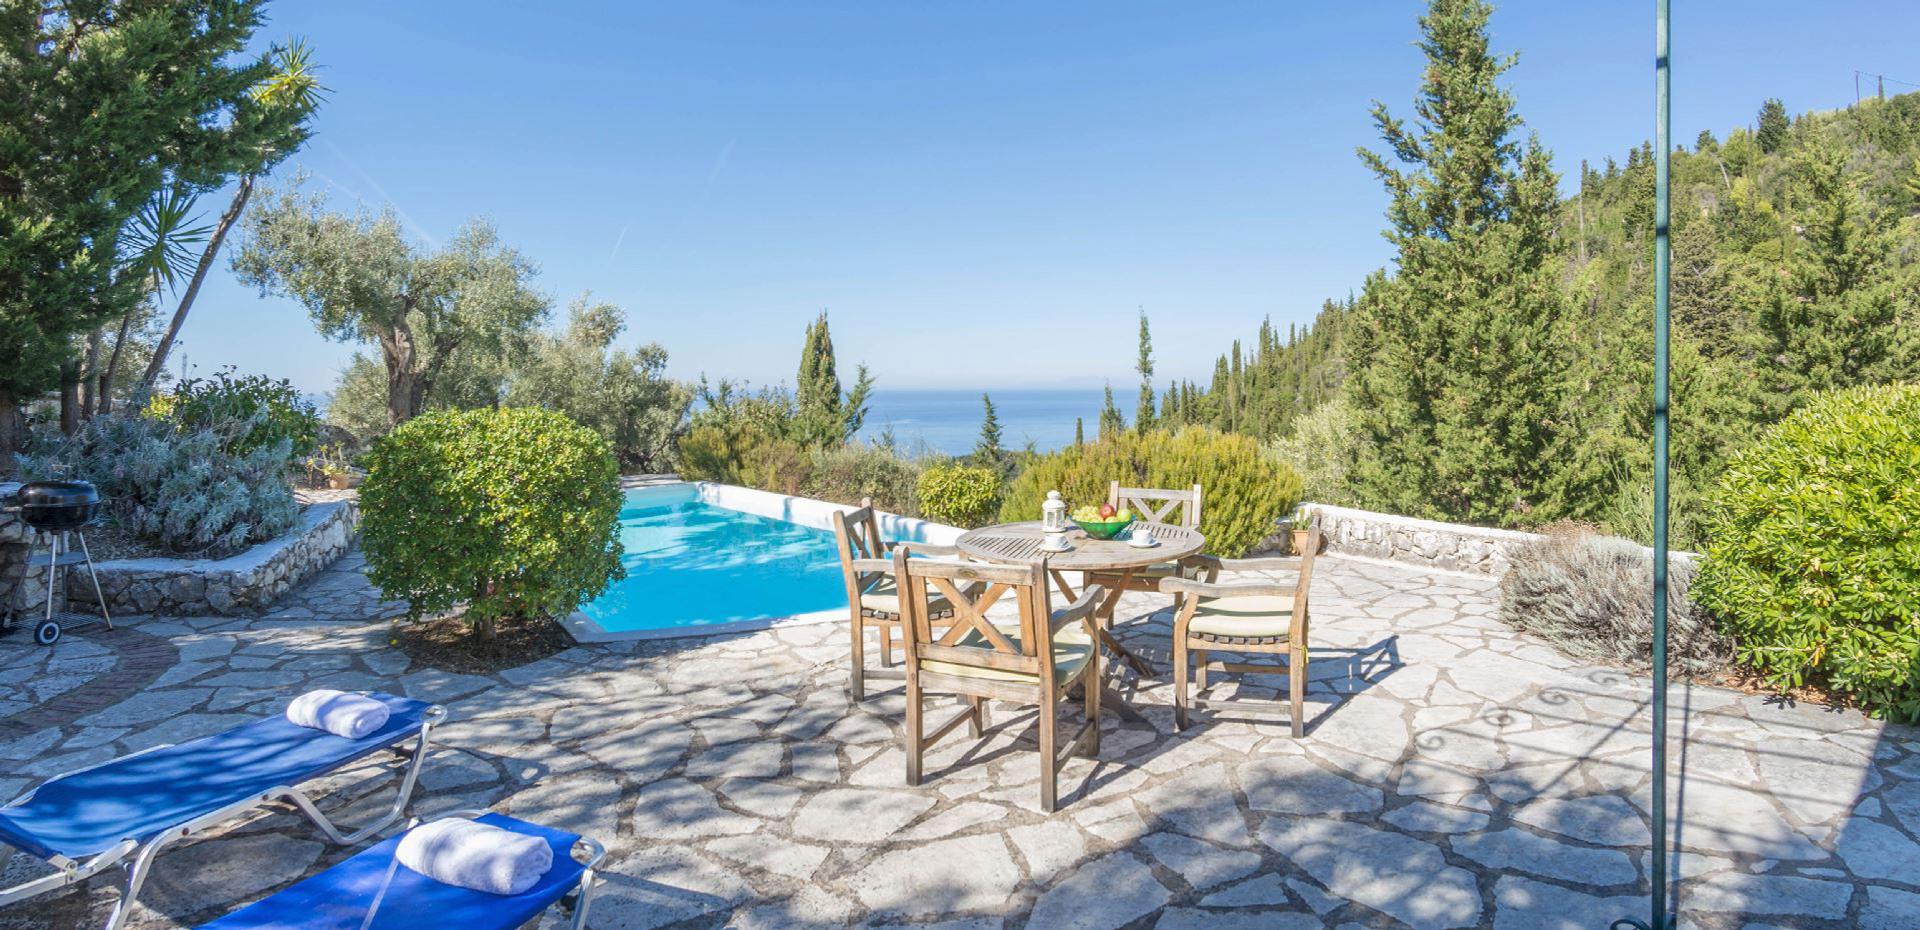 Ferienhaus mit Privatpool für 4 Personen  + 2 Ferienhaus in Griechenland